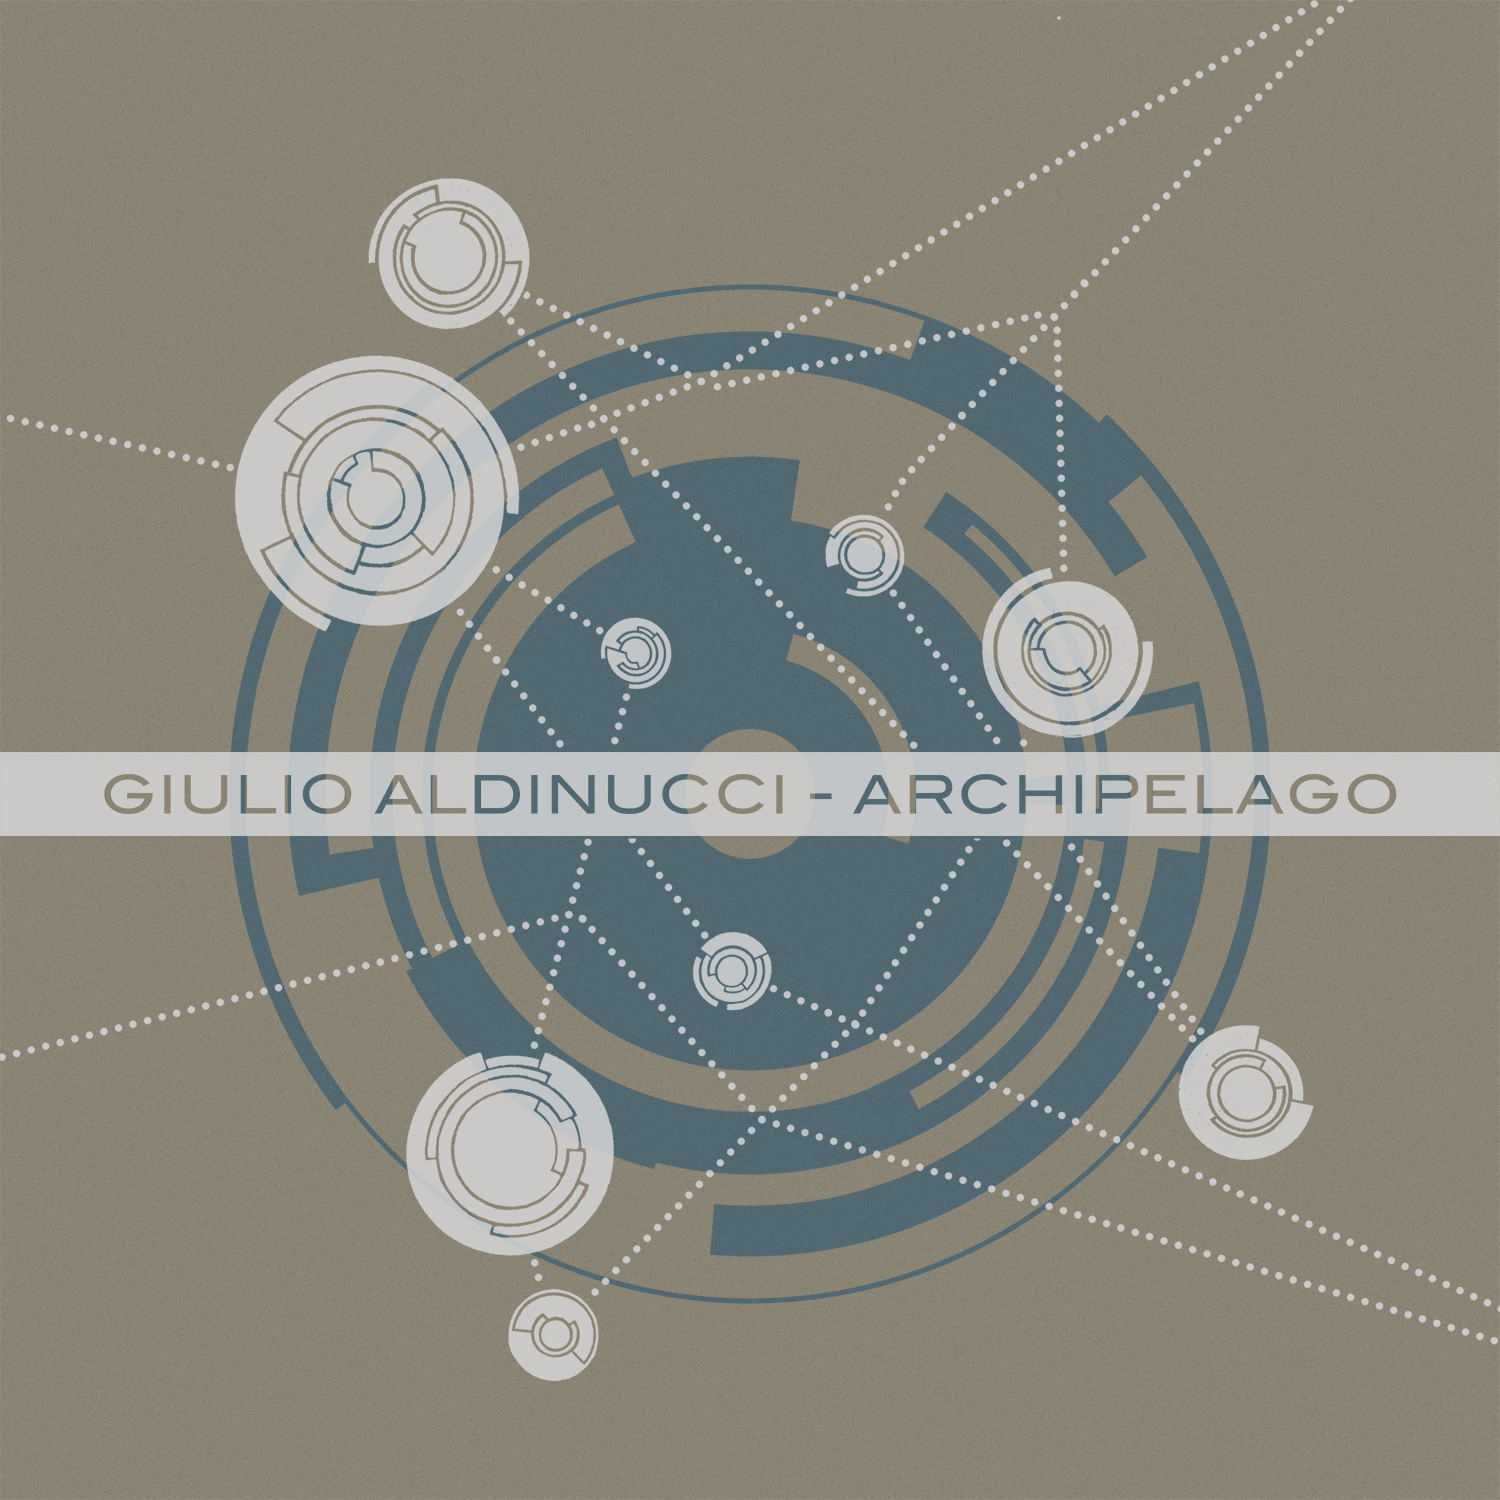 Giulio Aldinucci Archipelago ep cover